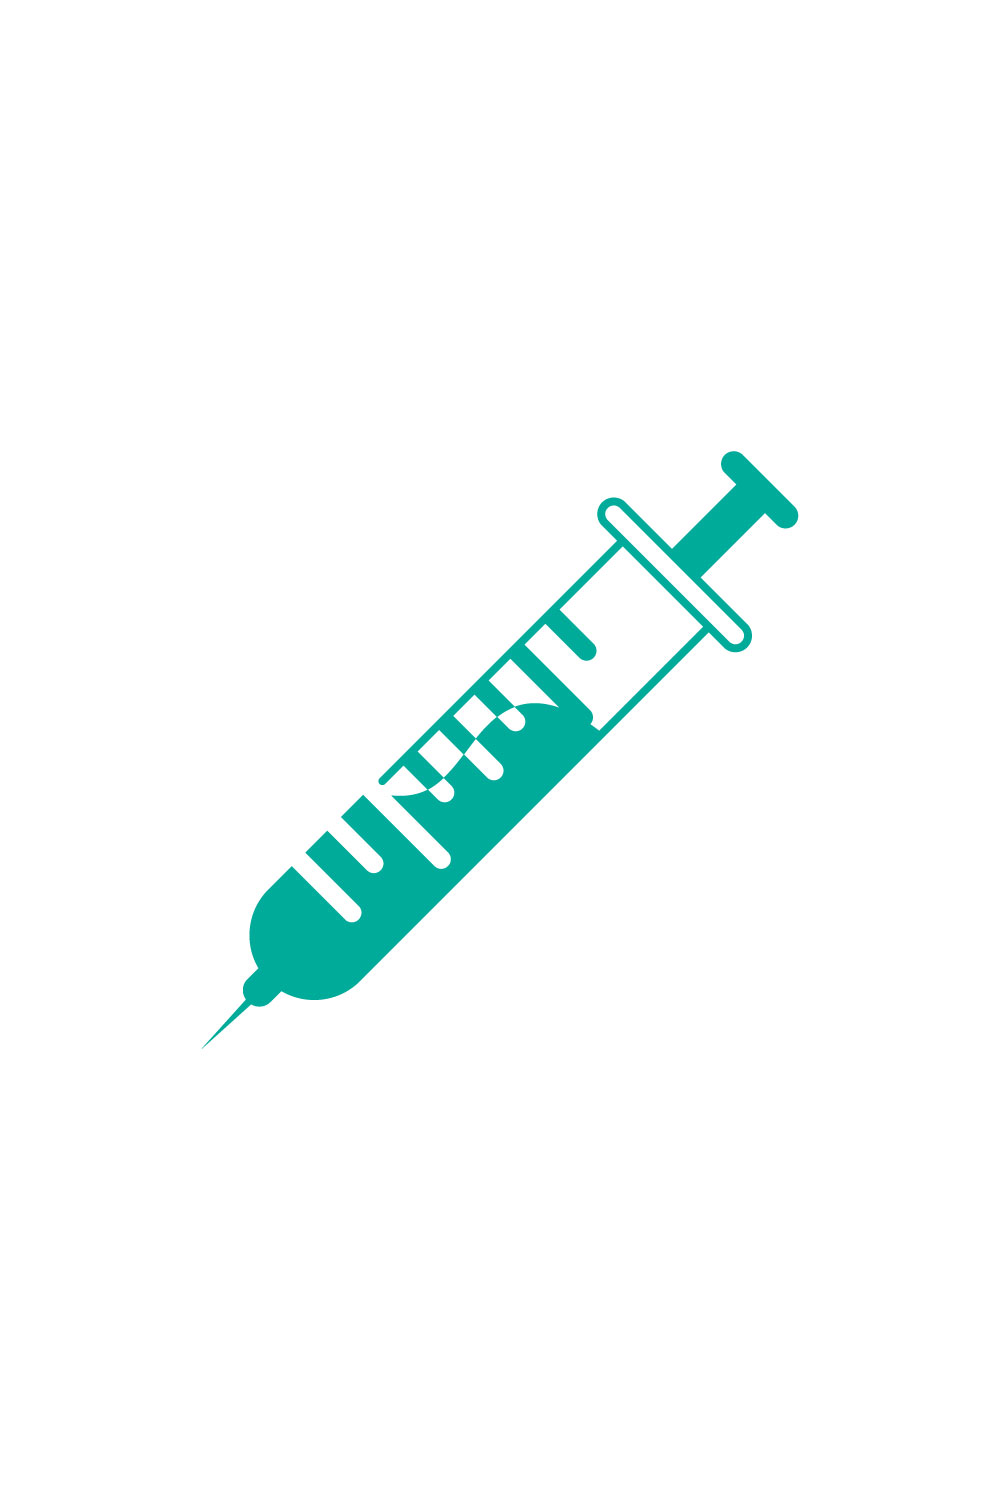 Medical Syringe Injection Logo design Concept, Vector illustration pinterest preview image.